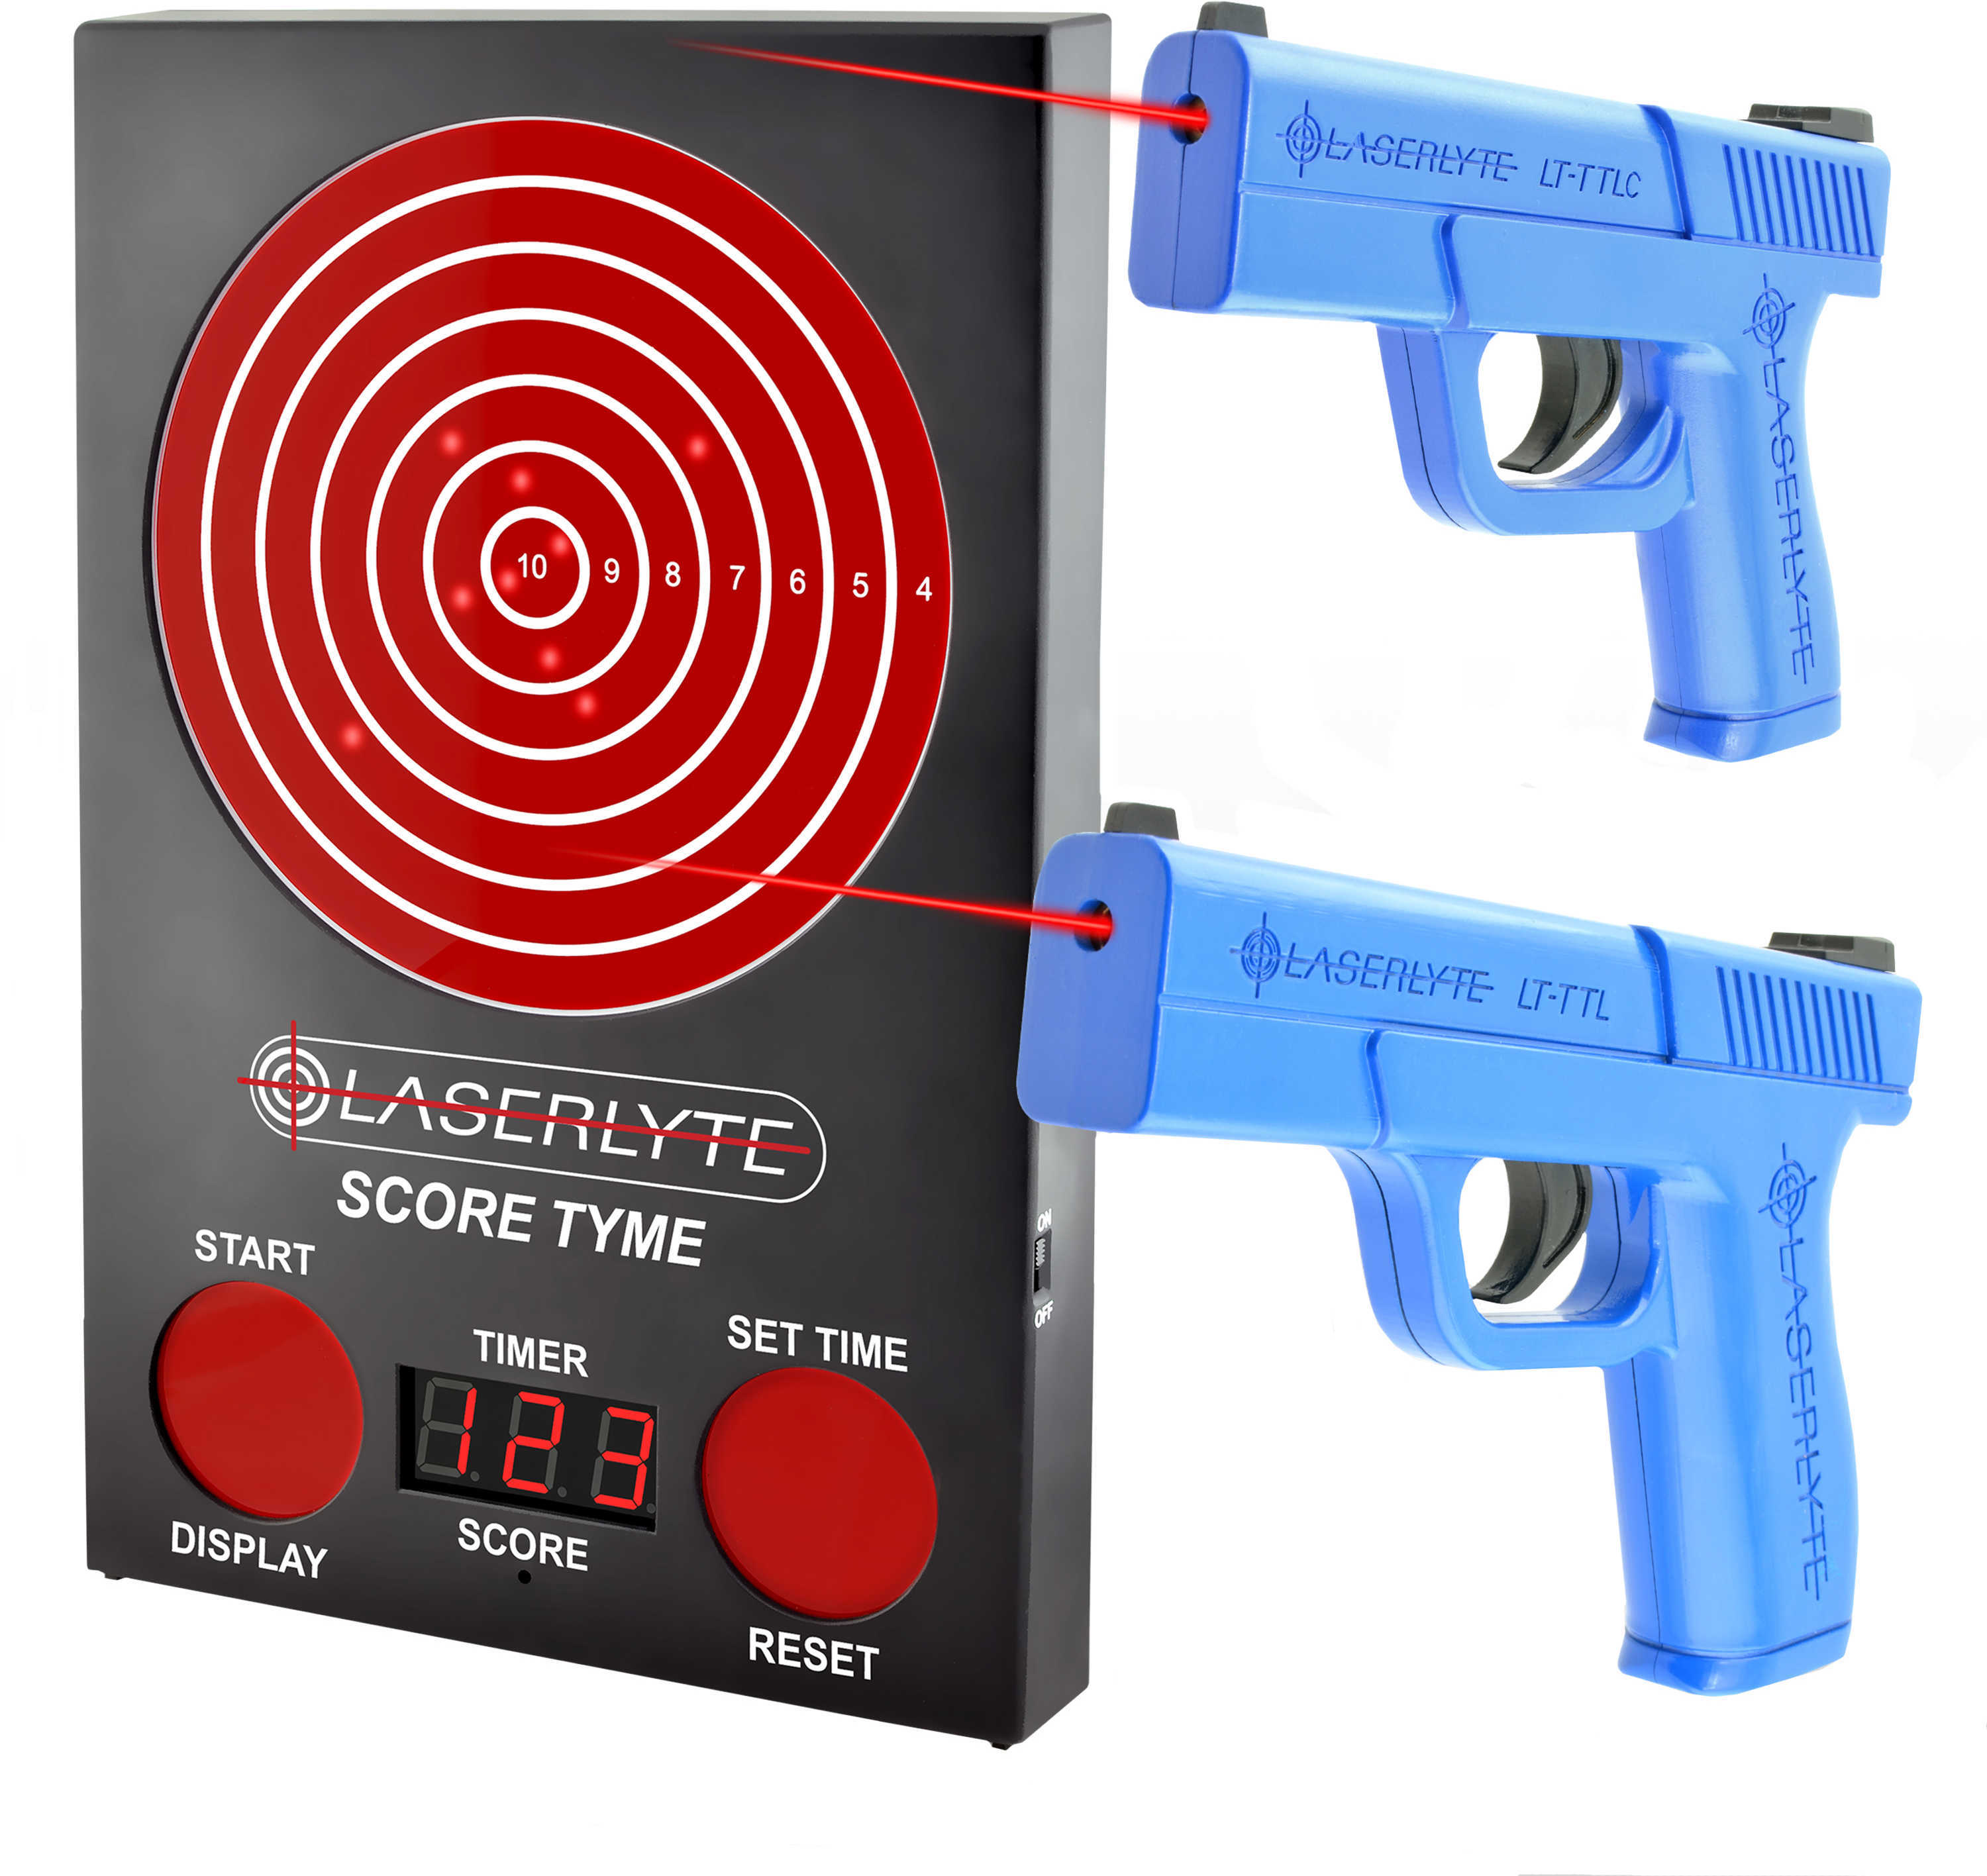 Laserlyte Laser Training Kit Includes Score Tyme Target 1 Full Pistol